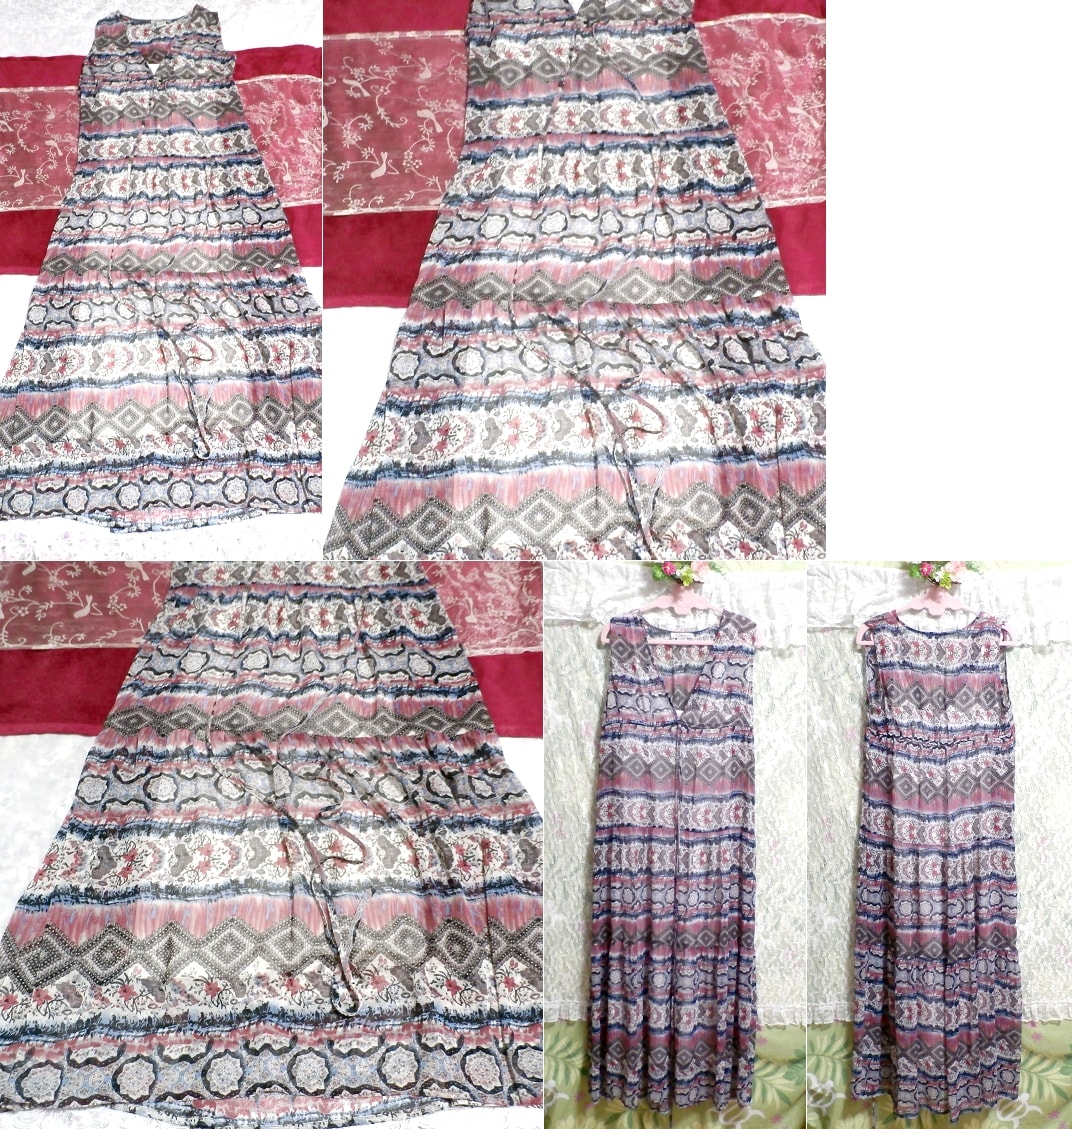 Blue pink white ethnic pattern chiffon negligee nightgown maxi dress, long skirt, m size